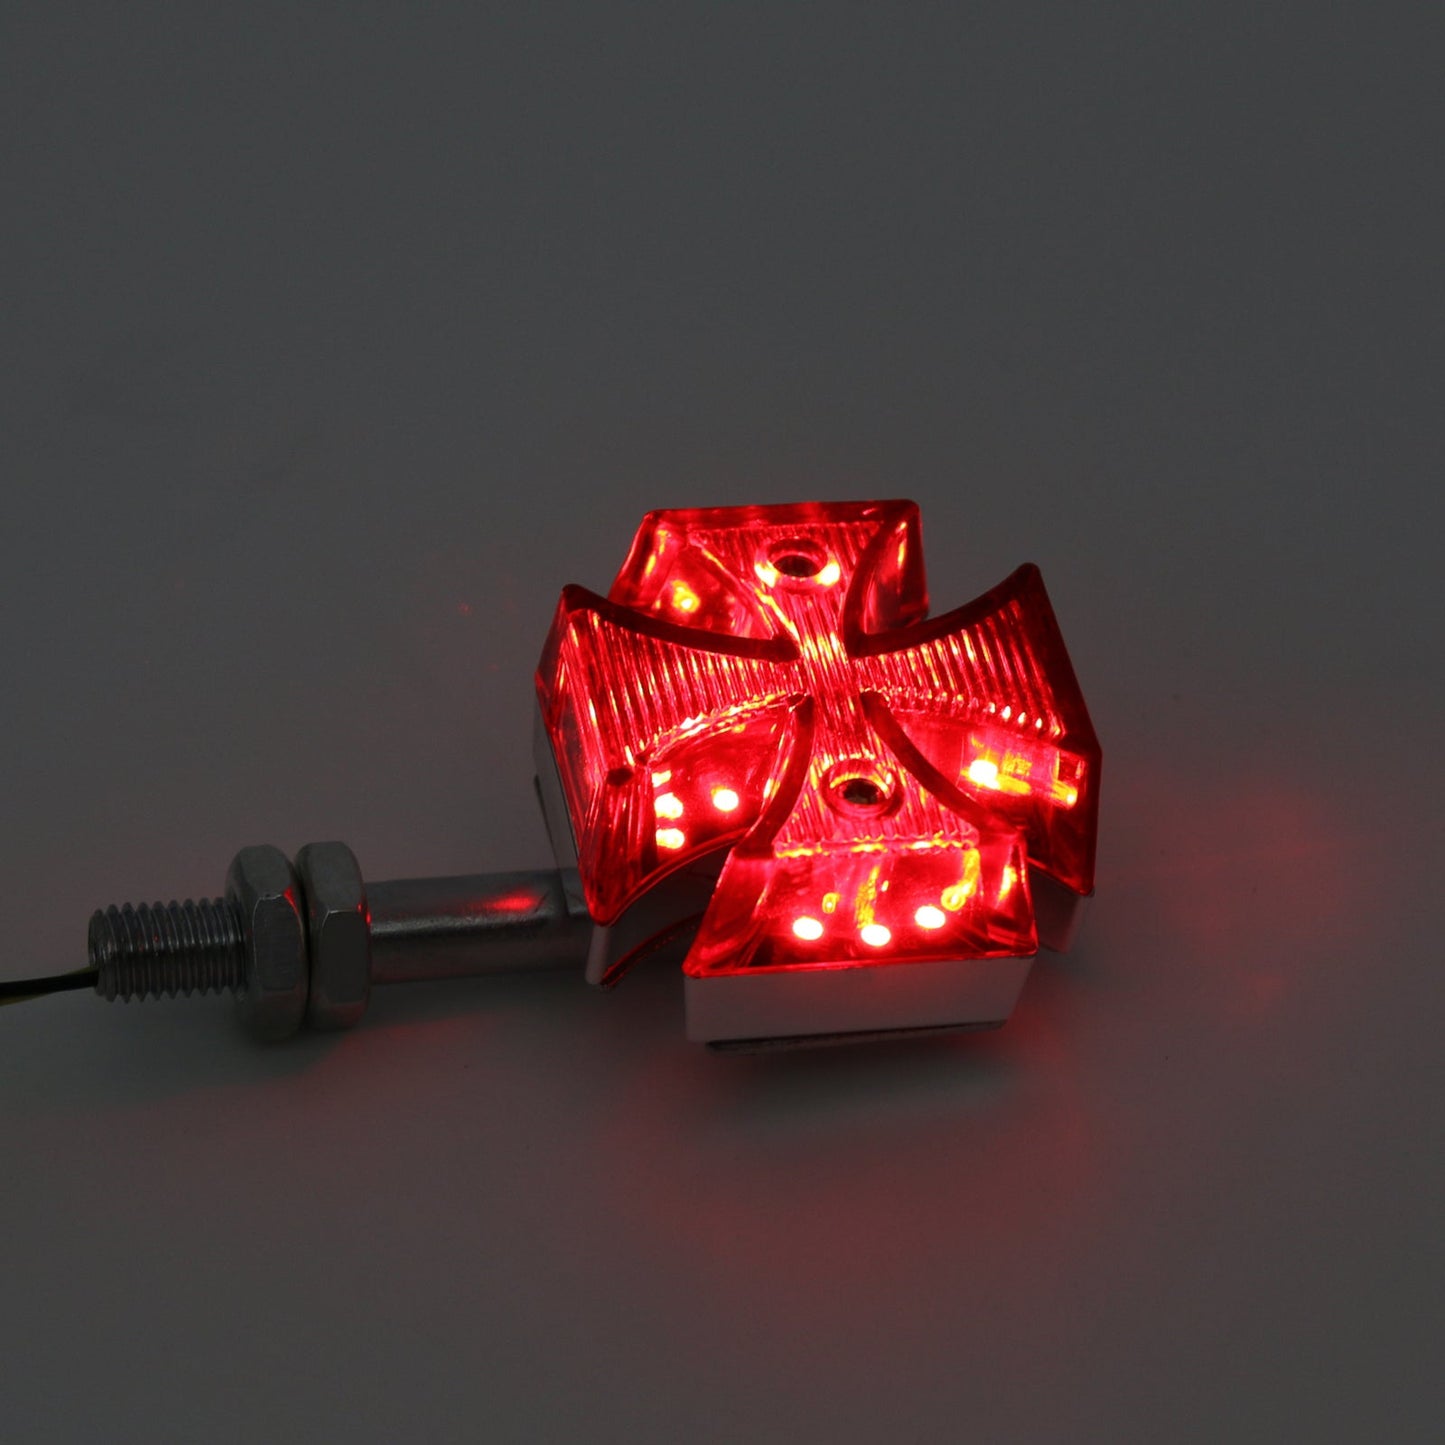 2x Custom Red Maltese Cross LED Turn Signal Light For Harley Motorcycle